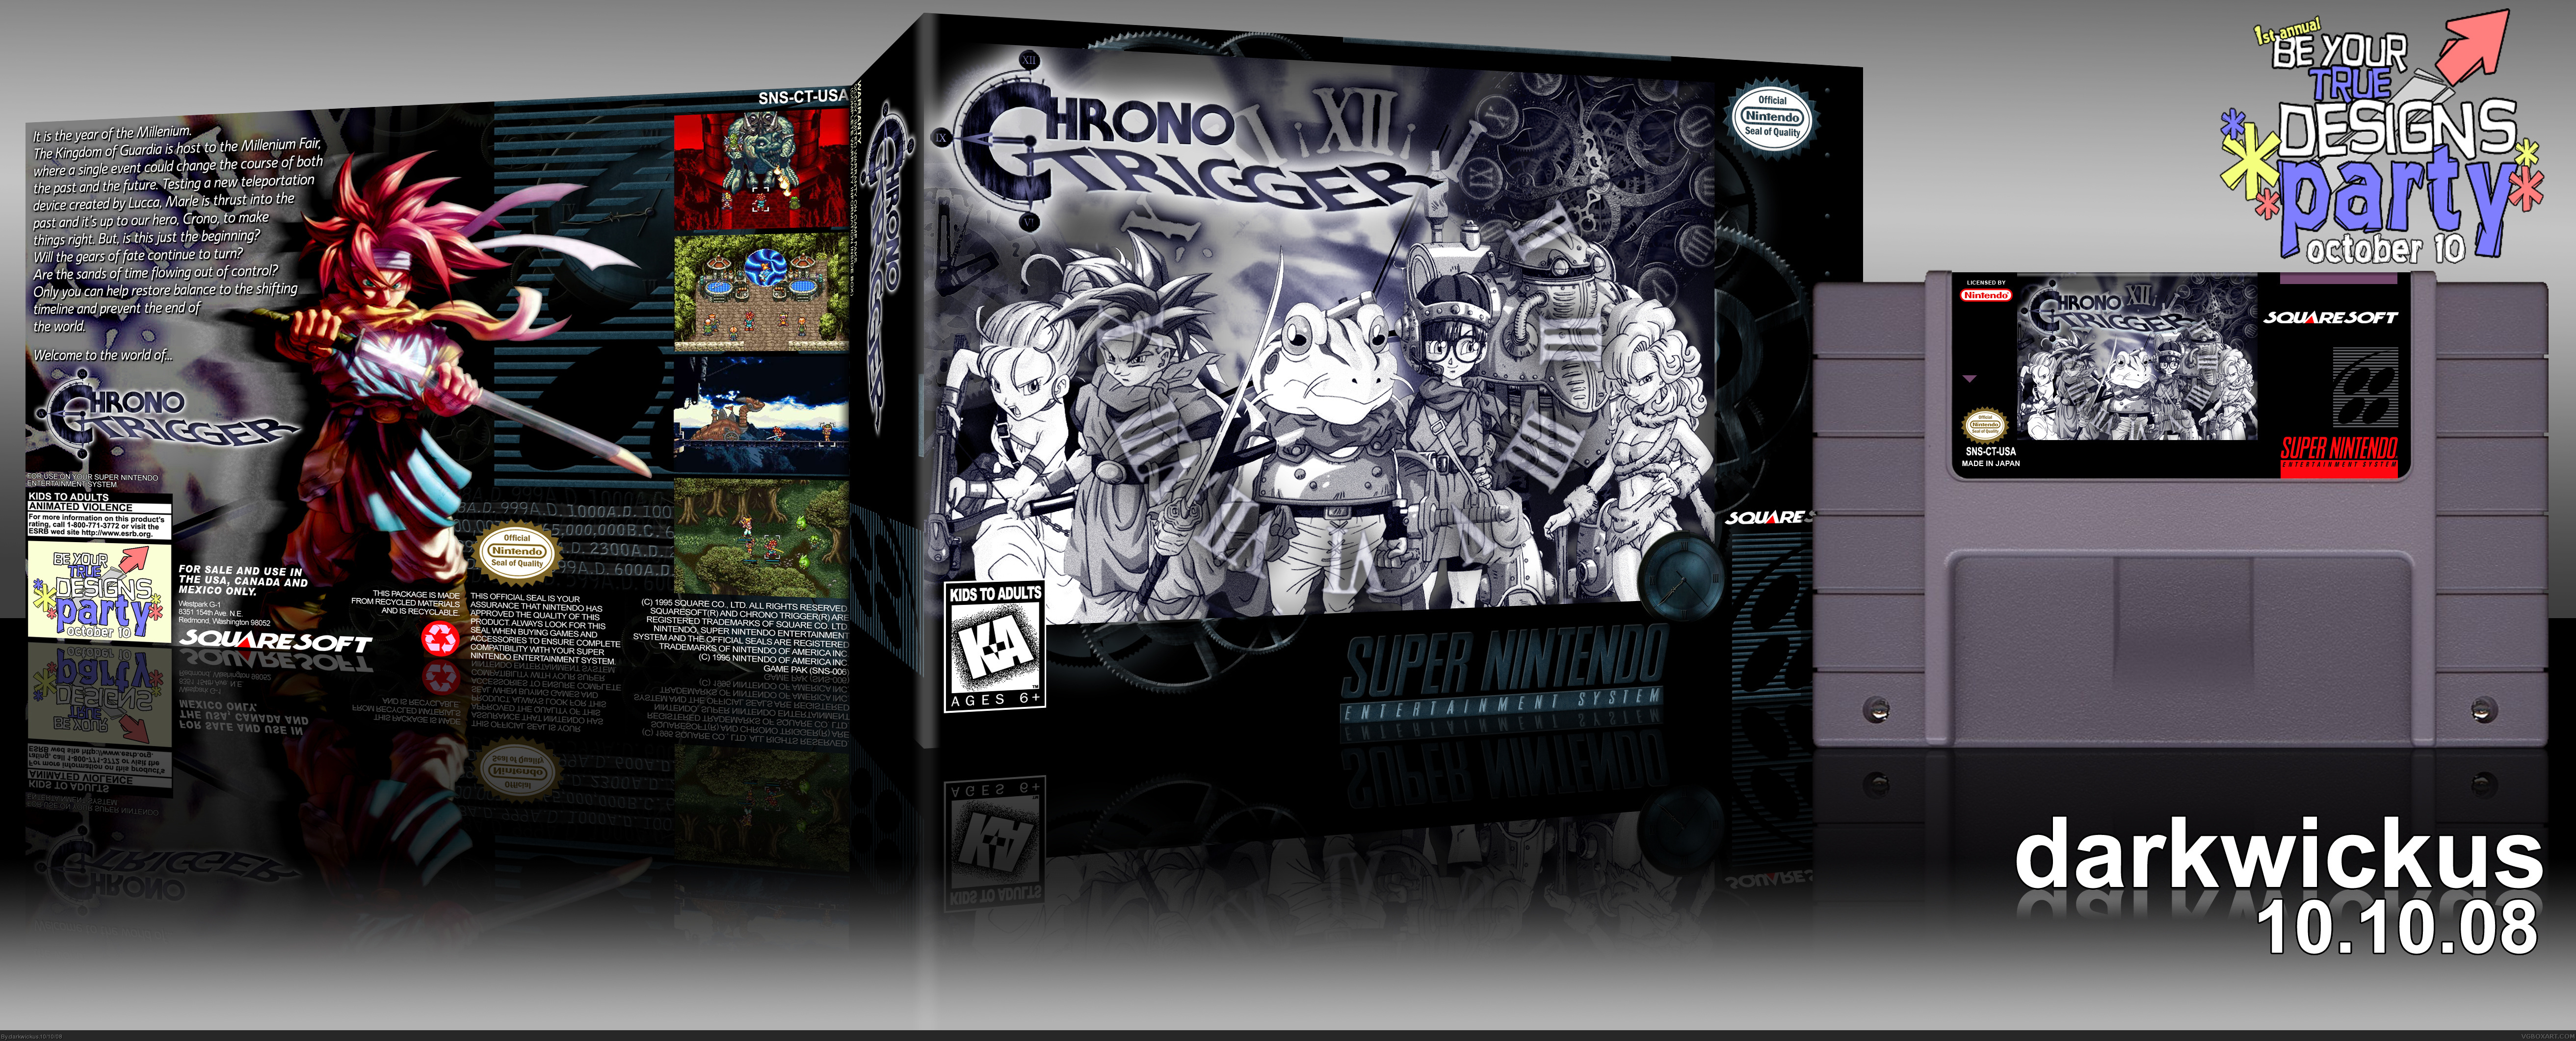 Chrono Trigger box cover